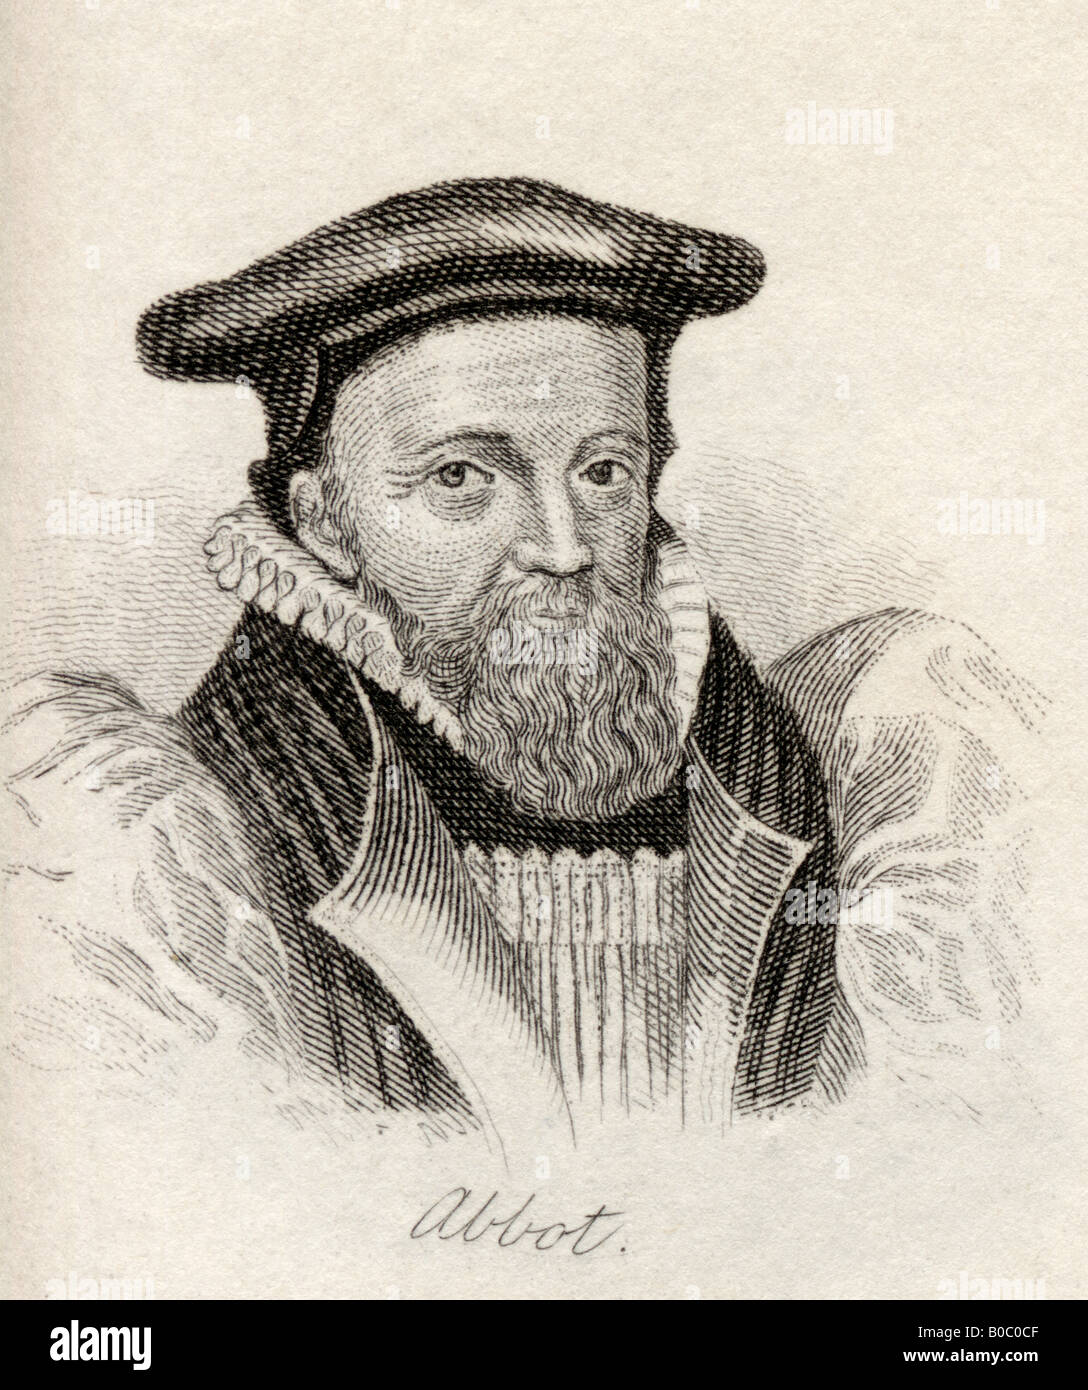 George Abt, 1562 - 1633. Erzbischof von Canterbury. Aus dem Buch Crabbs Historical Dictionary, veröffentlicht 1825. Stockfoto